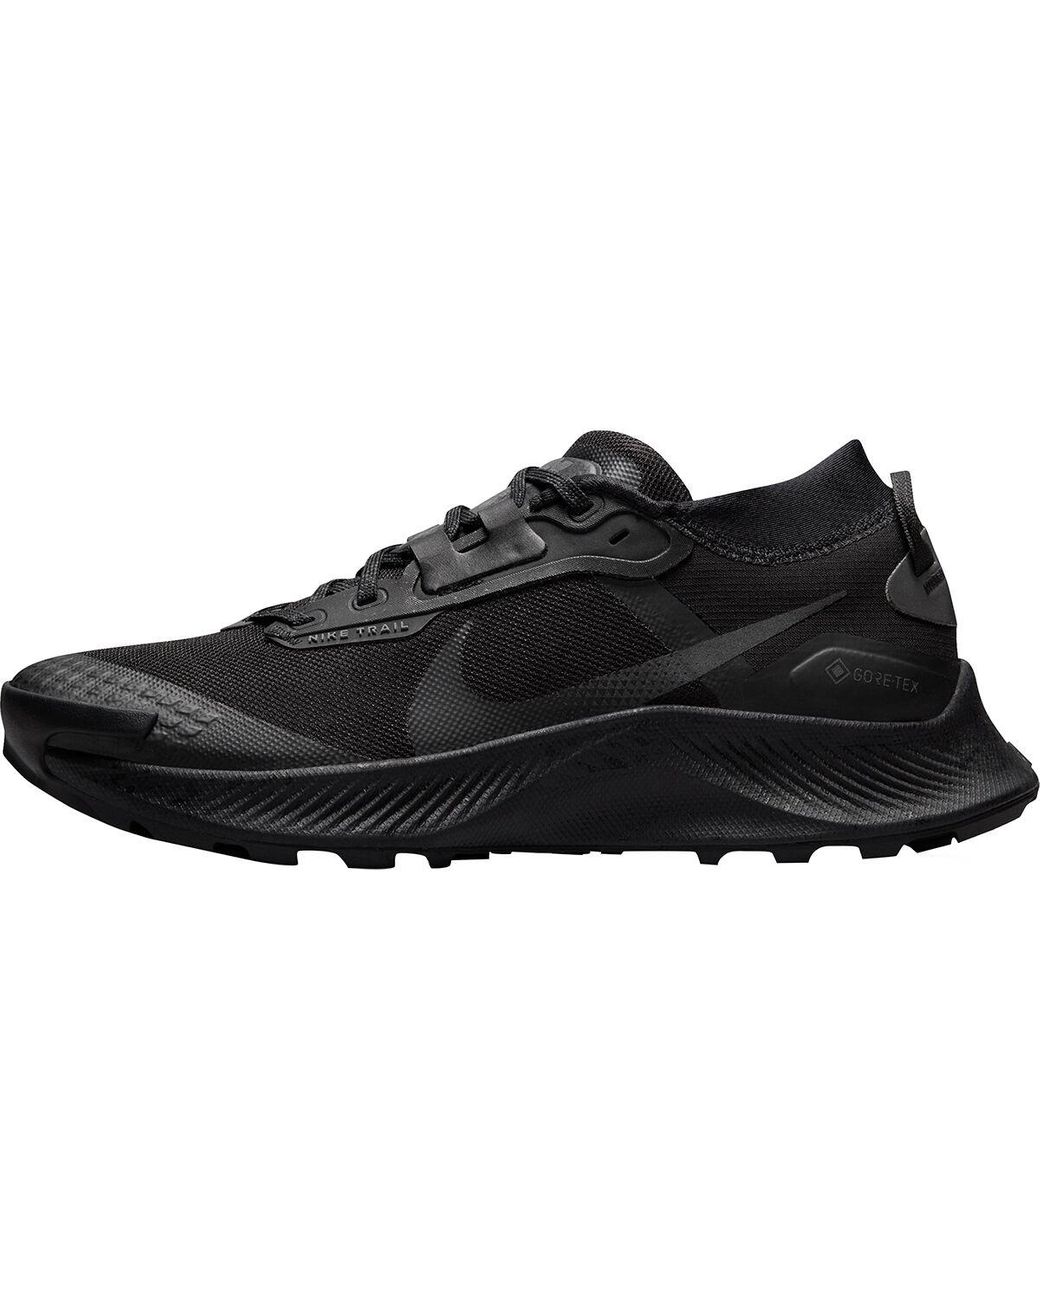 Nike Pegasus Trail 3 Gore-tex Running Shoe in Black/Black/Dark Smoke  Grey/Iron (Black) | Lyst